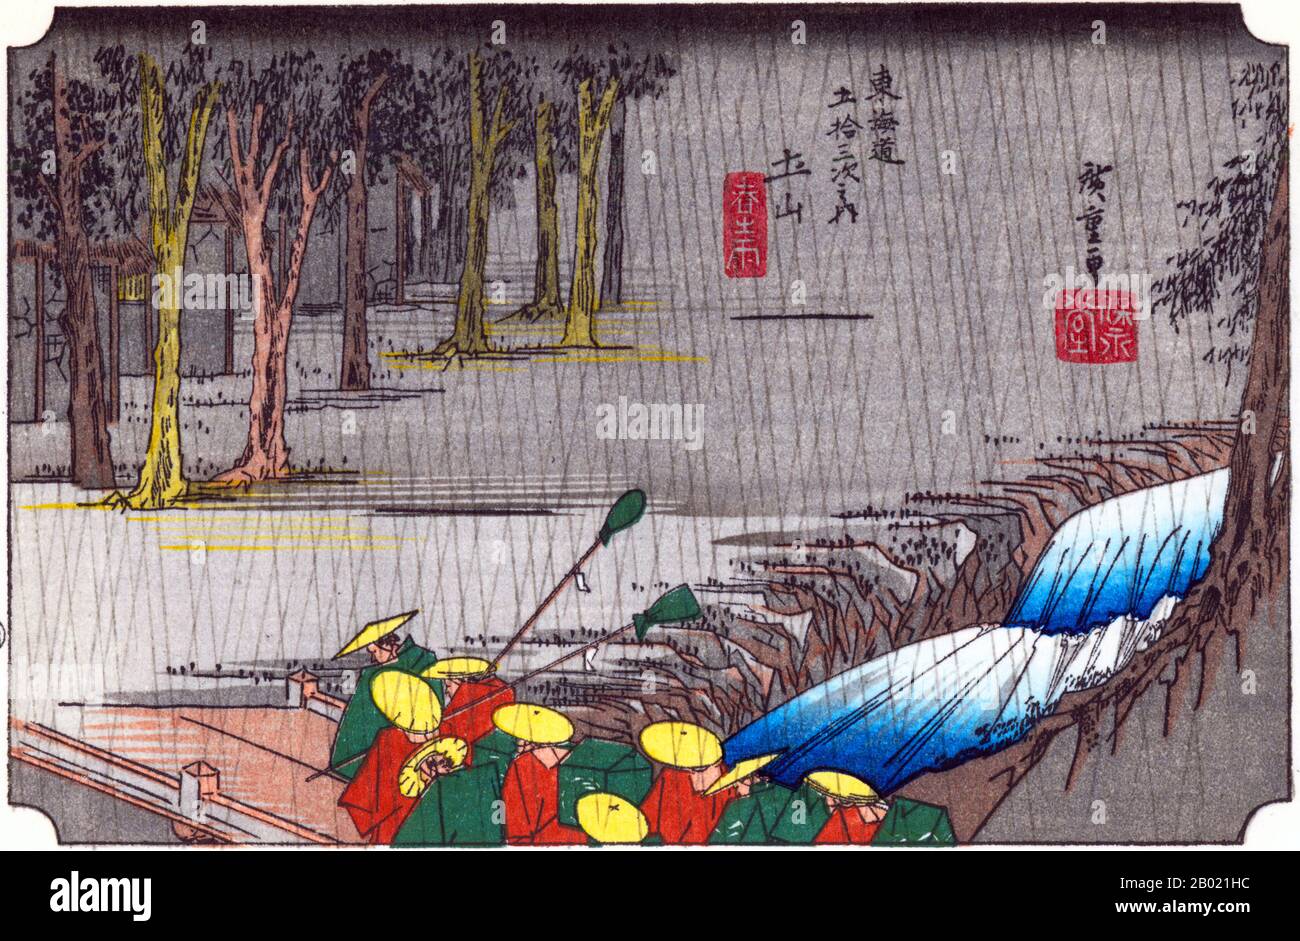 Tsuchi-yama: La tête d'une procession de daimyo traversant un torrent par un pont vers le village, caché dans un bosquet d'arbres, sous une forte aversion de pluie. Cette station, située dans la forêt de montagne, était connue pour ses abondantes précipitations printanières. Contre les fortes pluies, porter des manteaux de pluie les avant-gardes d'une procession d'un seigneur féodal traversent un petit pont enjambant un ruisseau torrentiel. Utagawa Hiroshige (歌川 広重, 1797 – 12 octobre 1858) était un artiste ukiyo-e japonais et l'un des derniers grands artistes de cette tradition. Il a également été appelé Andō Hiroshige (安藤 広重) (une combin irrégulière Banque D'Images